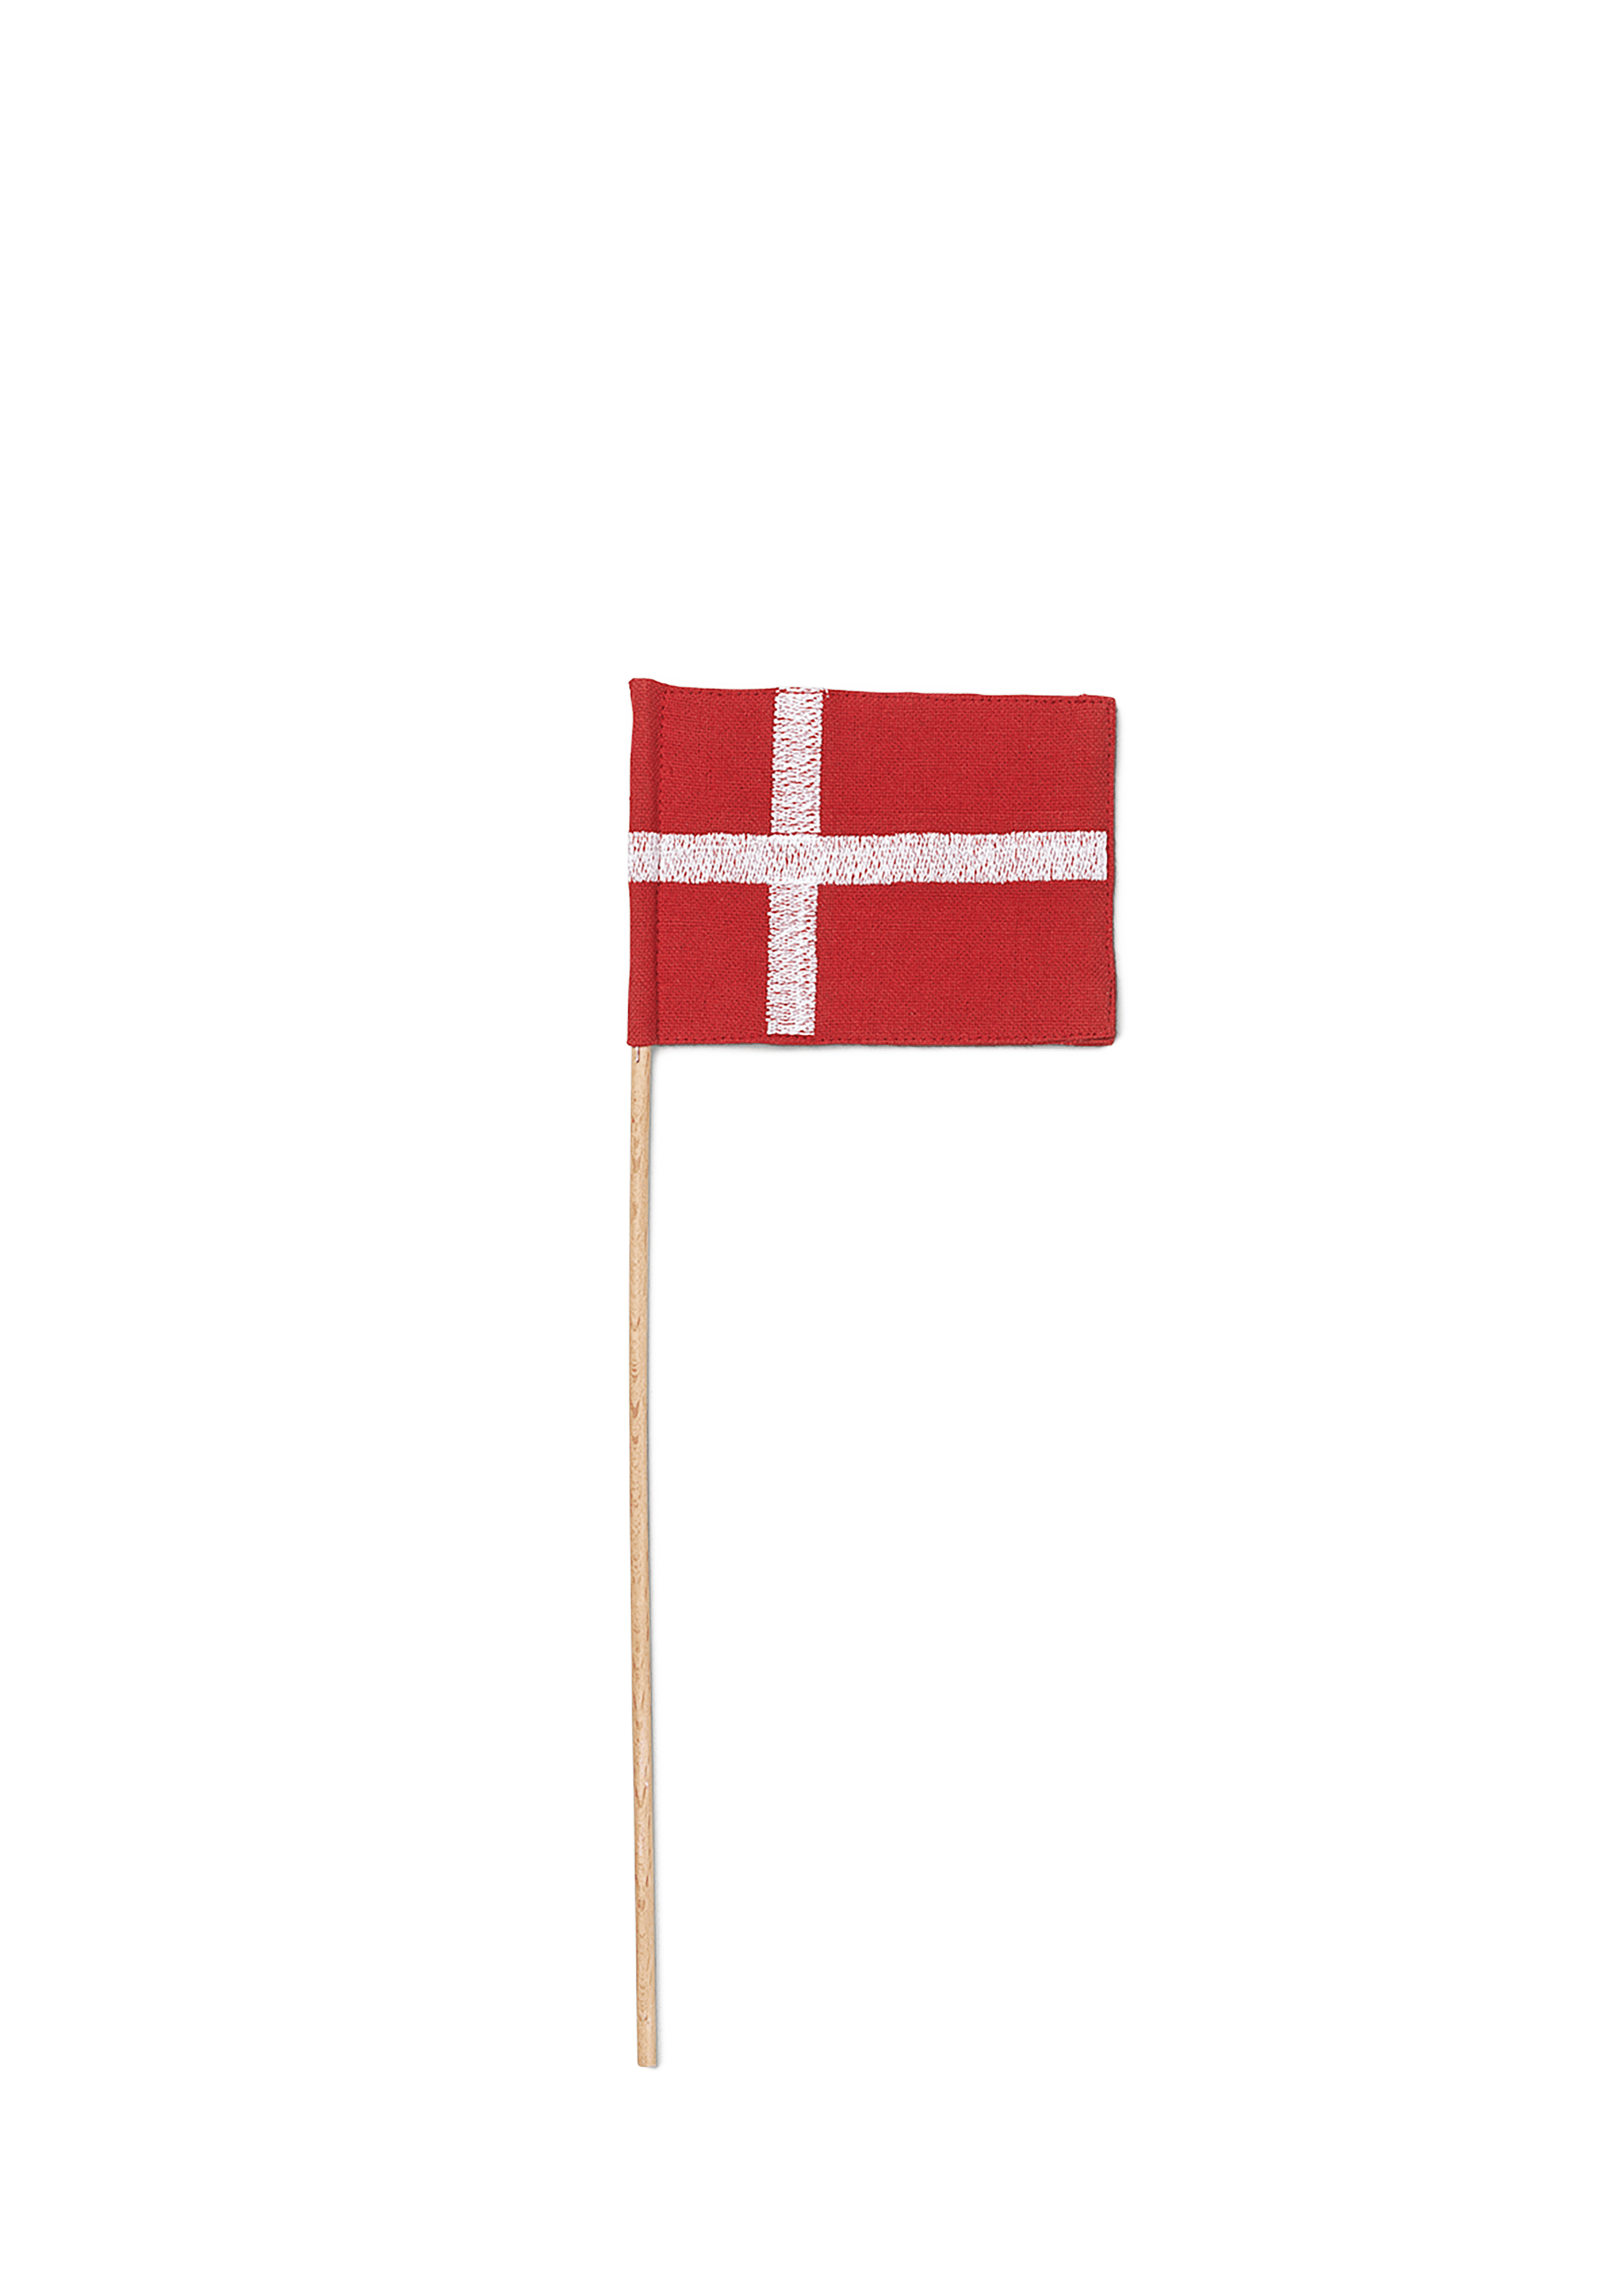 Textil Flagge für klein Fahnenträger (39482) Ersatzteile